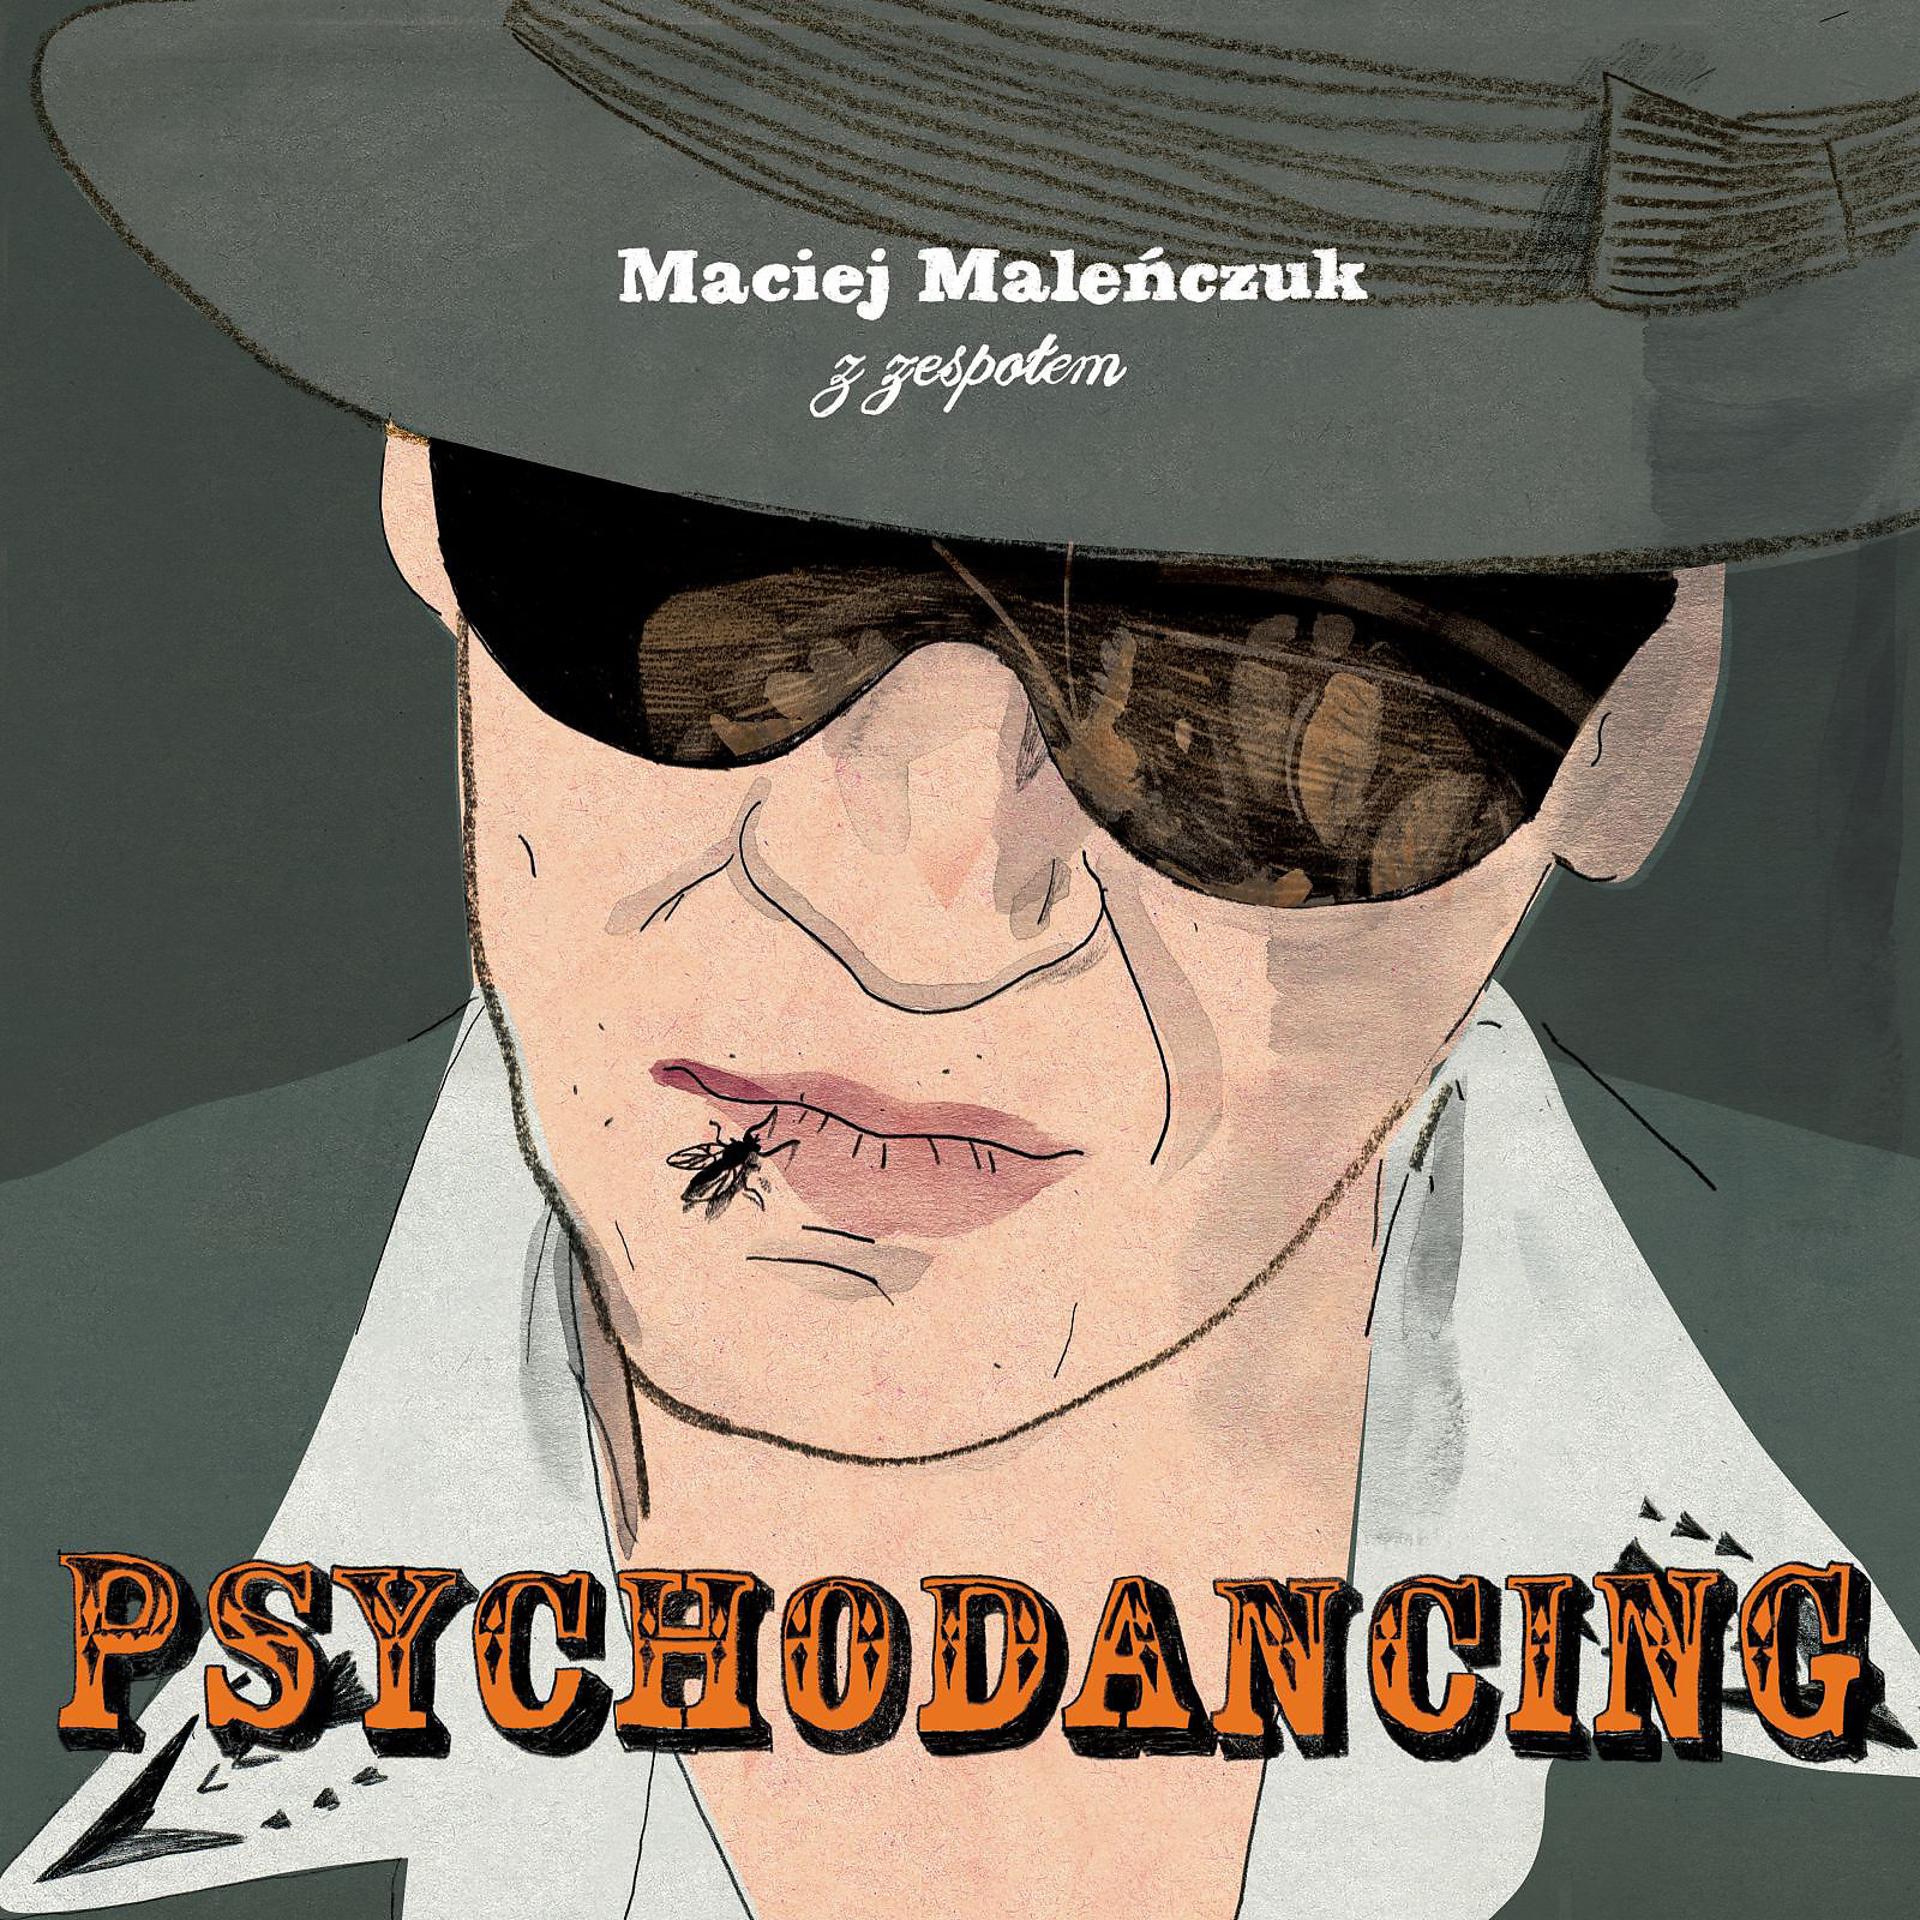 Постер к треку Maciej Malenczuk z zespolem Psychodancing - Medley v2 Sylwester